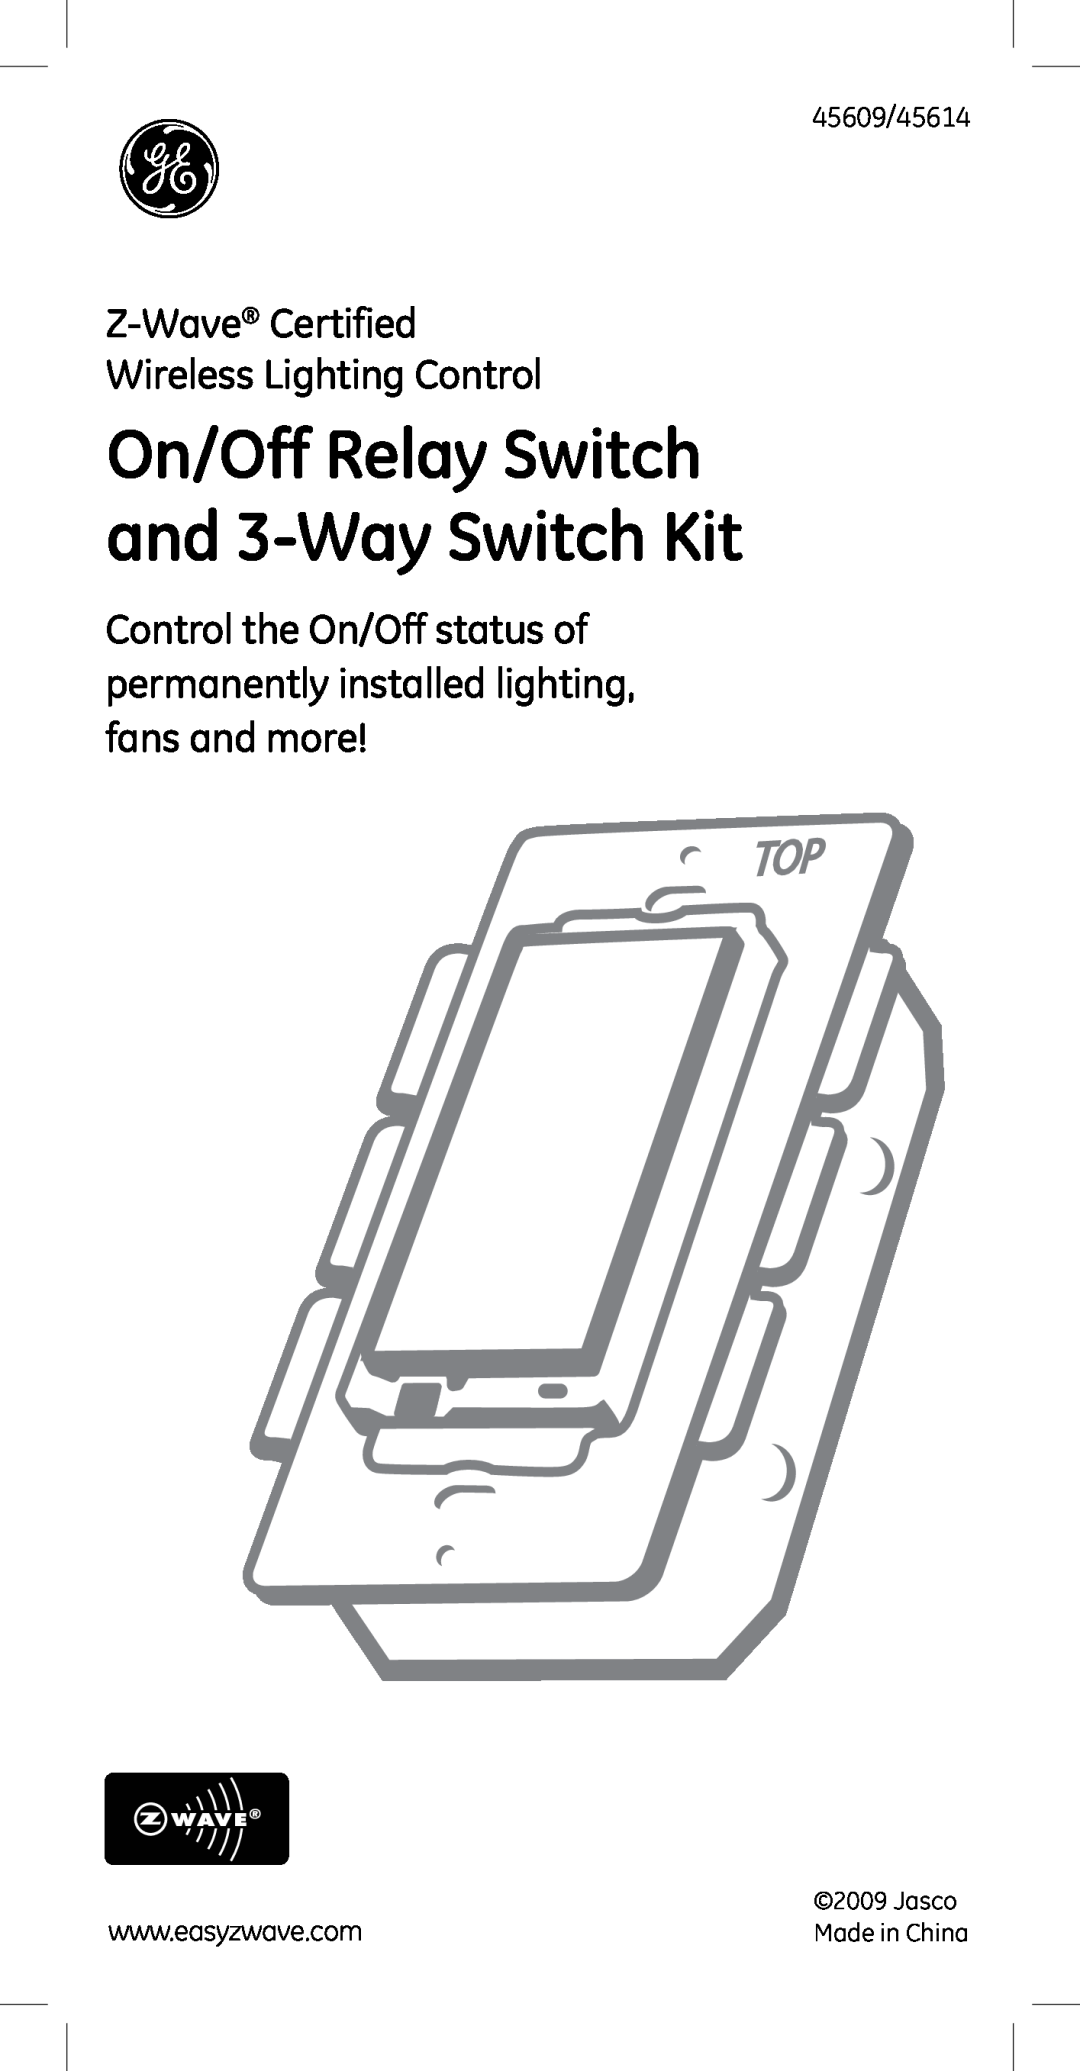 Jasco 45609 manual On/Off Relay Switch and 3-WaySwitch Kit, Z-Wave Certified Wireless Lighting Control, Jasco 